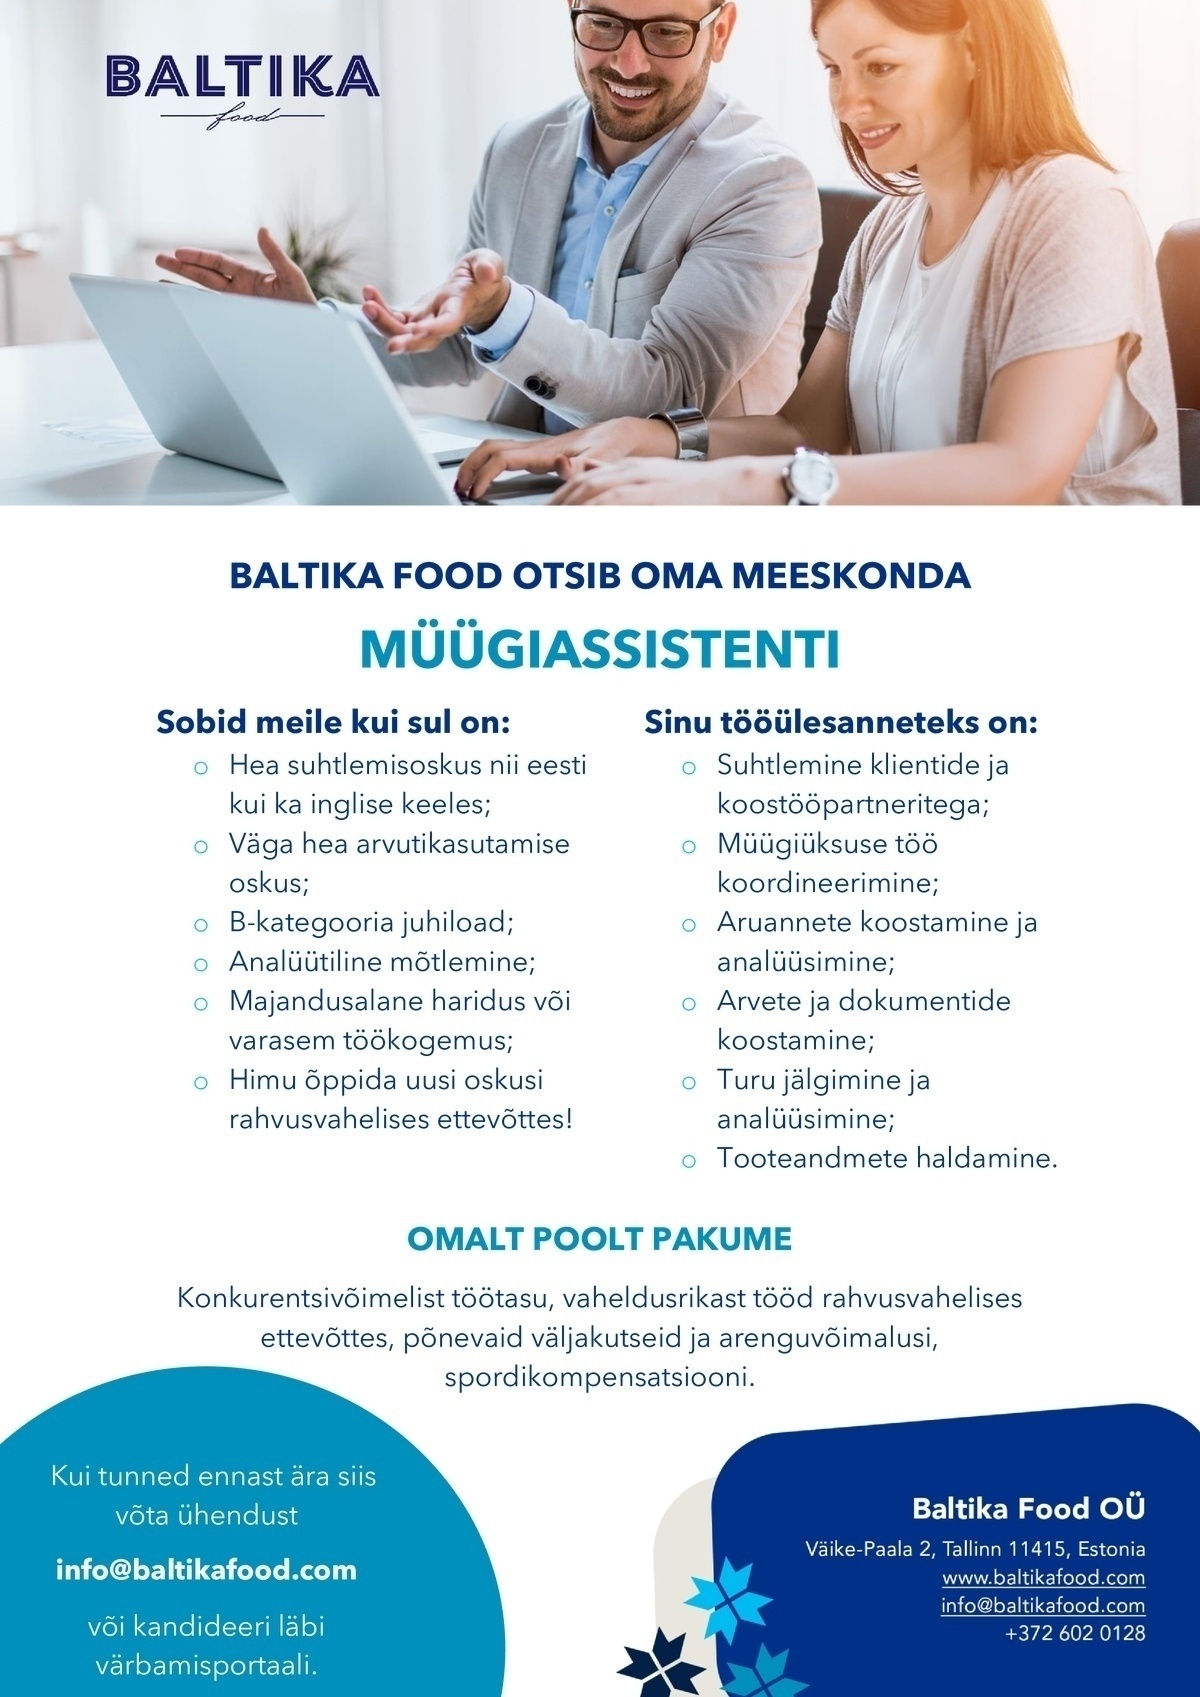 Baltika Food OÜ Müügiassistent